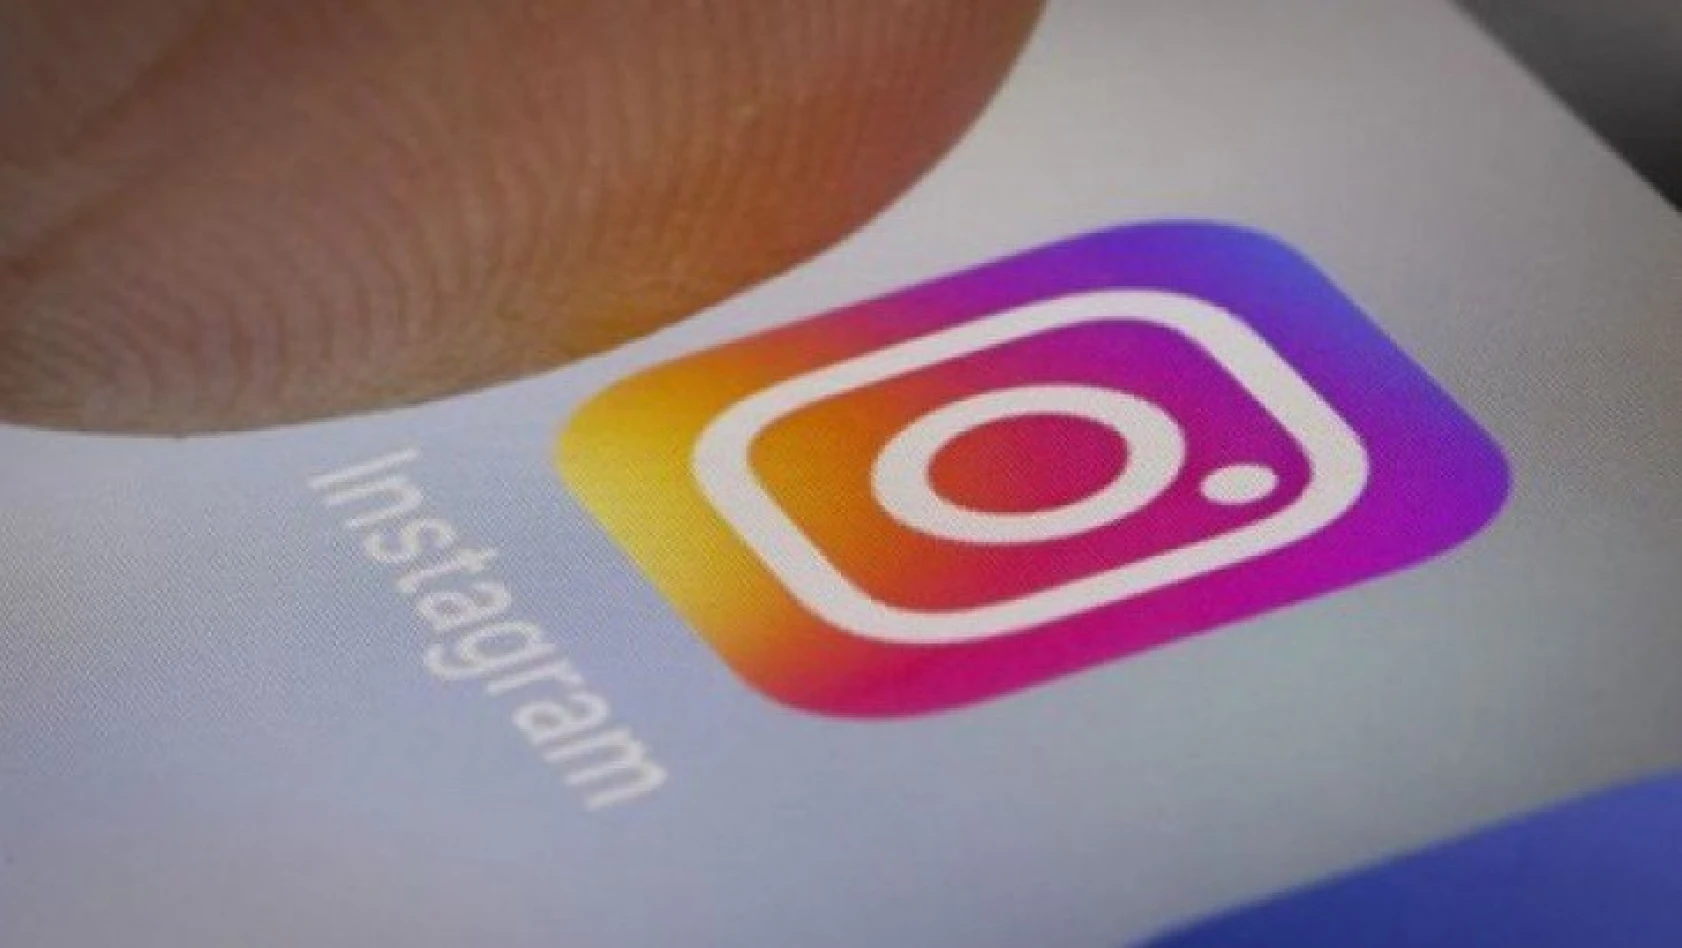 Instagram'dan yeni güvenlik önlemi